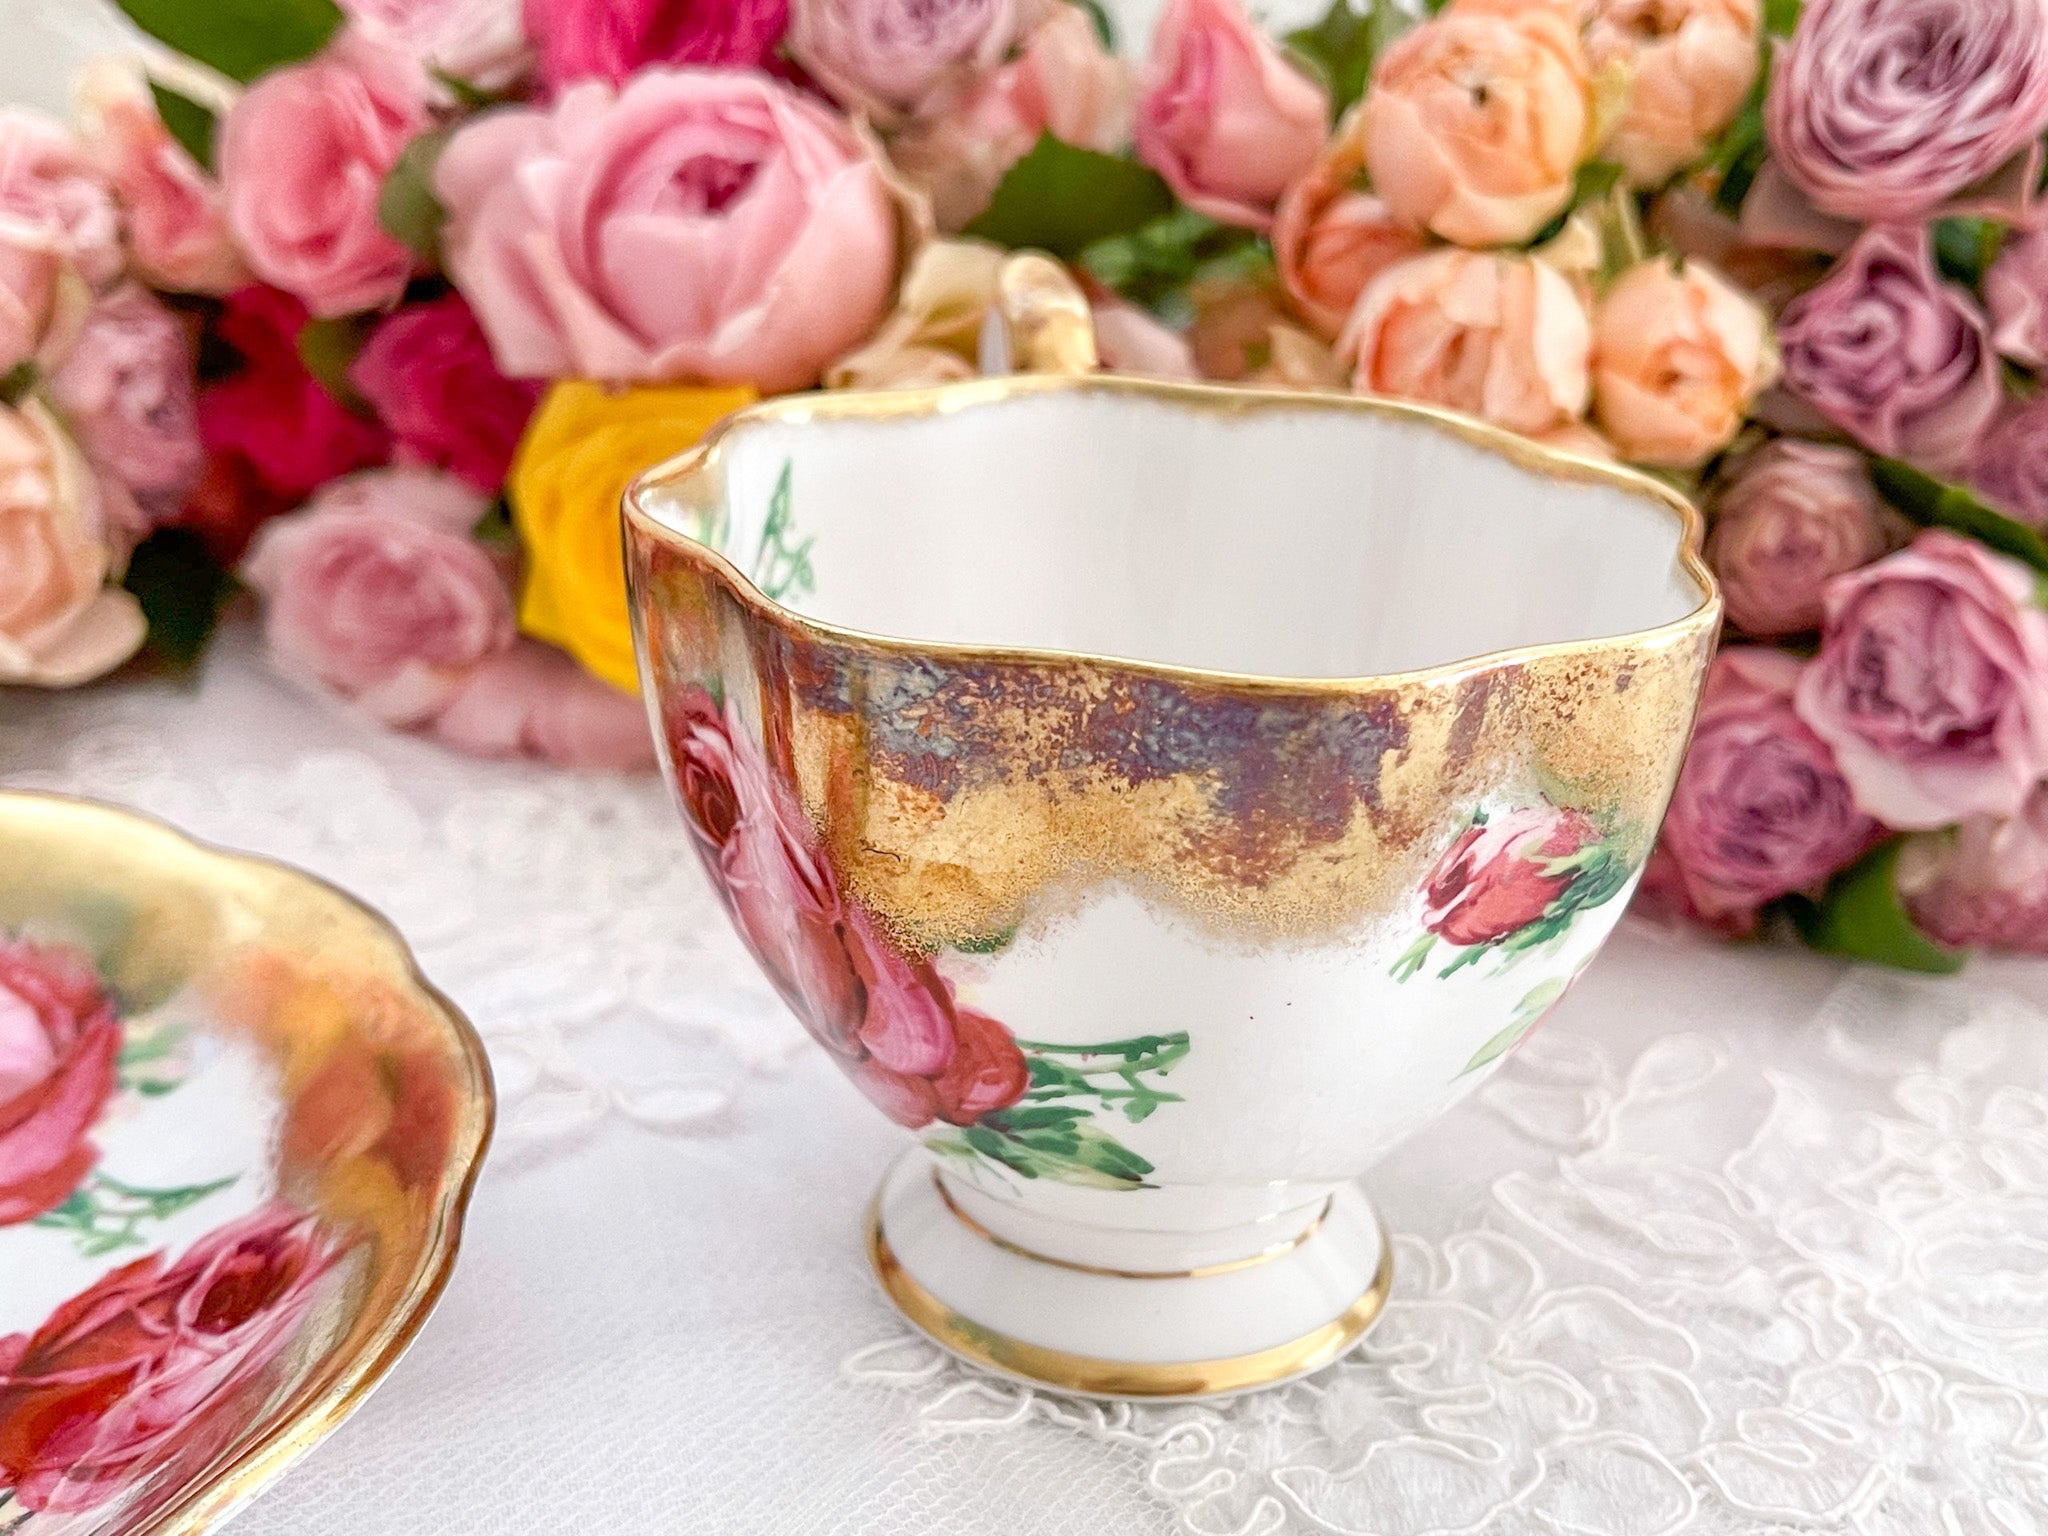 クイーンアン ピンクの大輪のバラと豪華な金彩のカップ&ソーサー